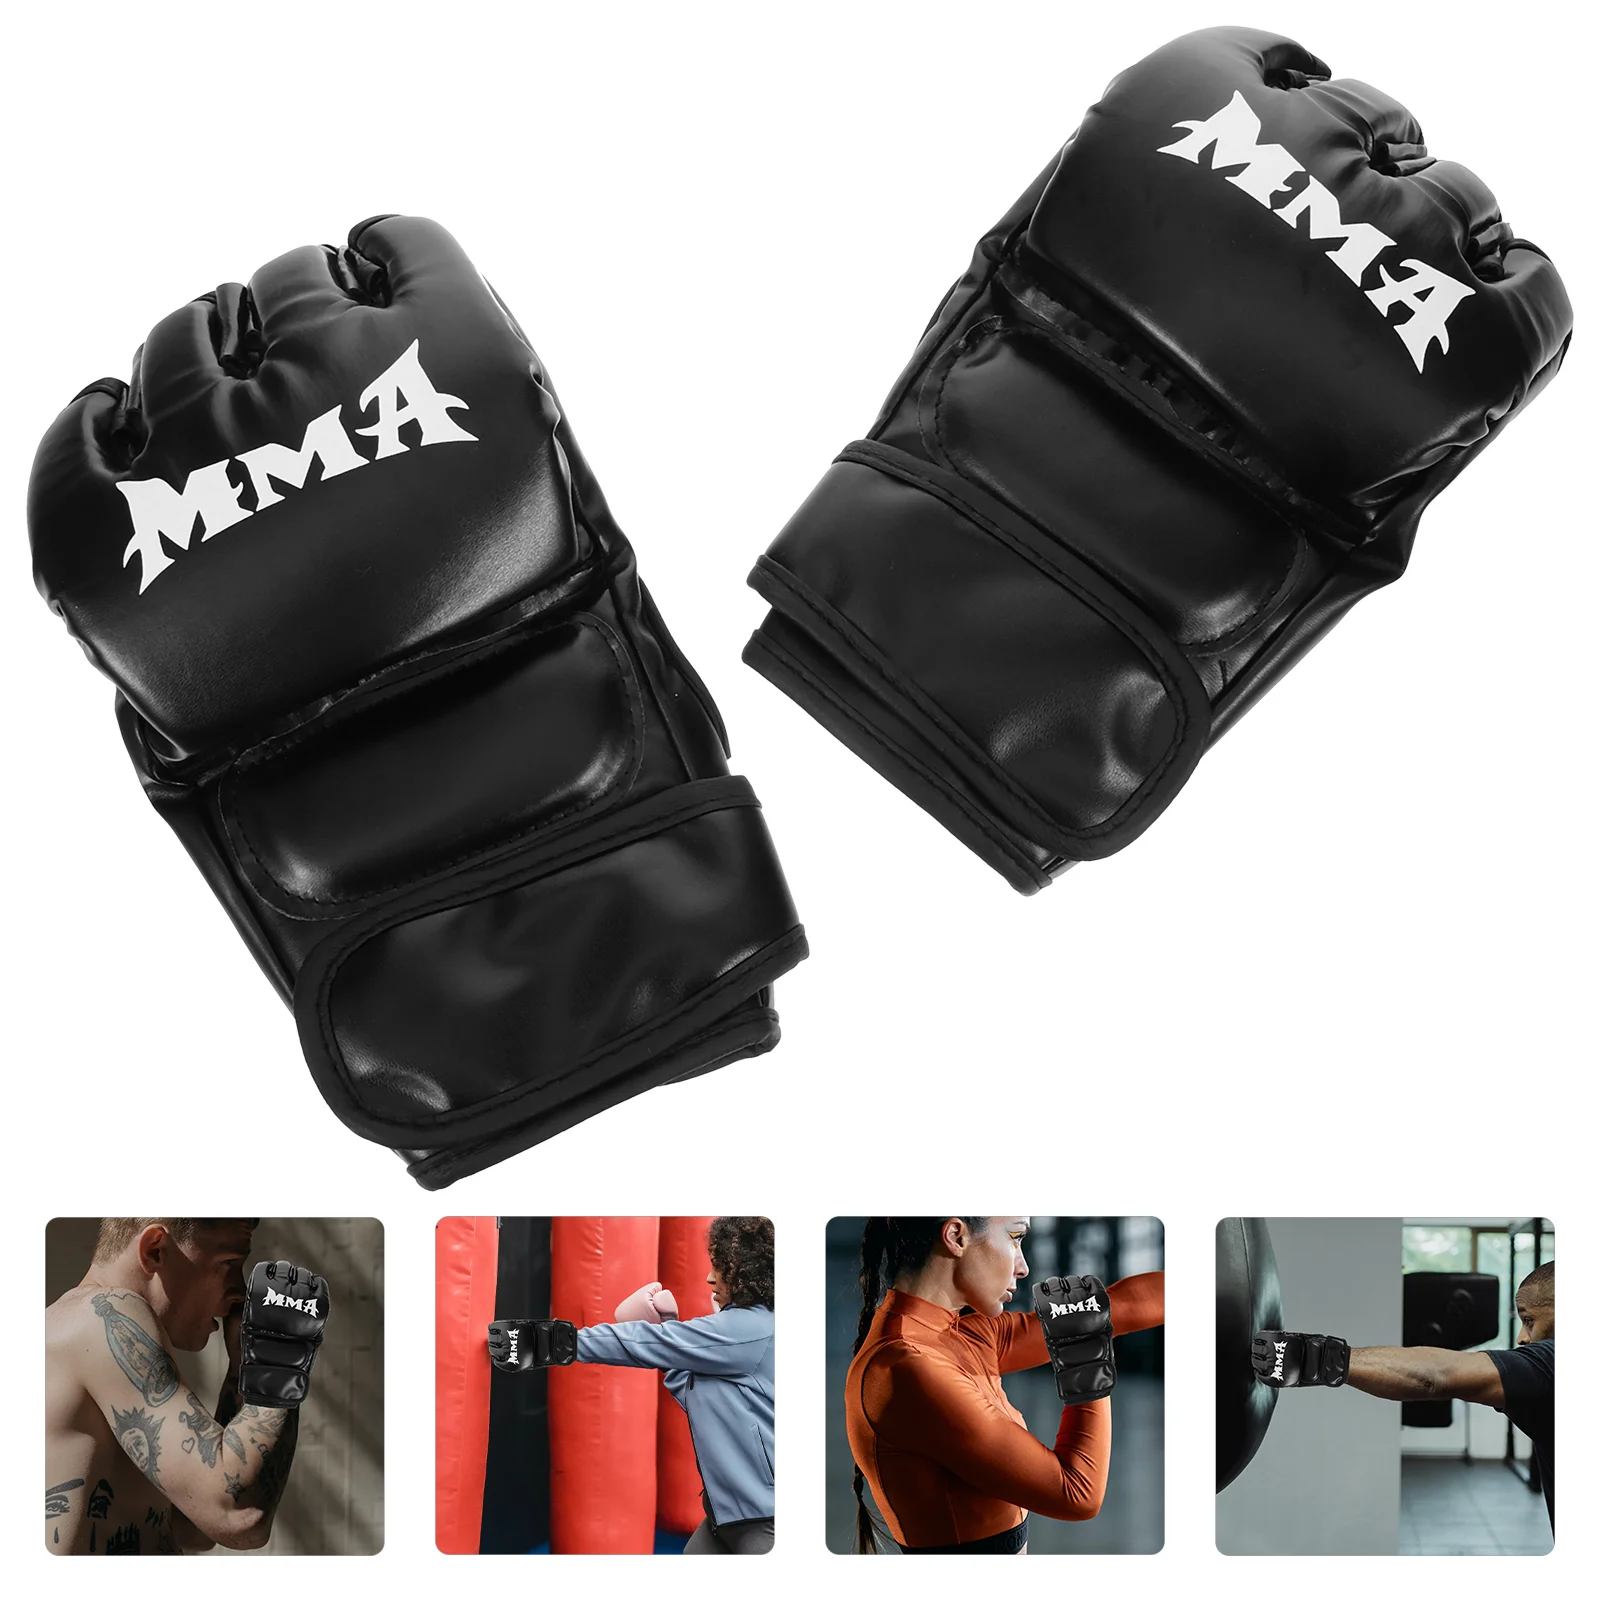 

Черные перчатки, портативные боксерские Мужские аксессуары, основные профессиональные перчатки для кикбоксинга, полиуретановые перчатки с полупальцами для мужчин и женщин